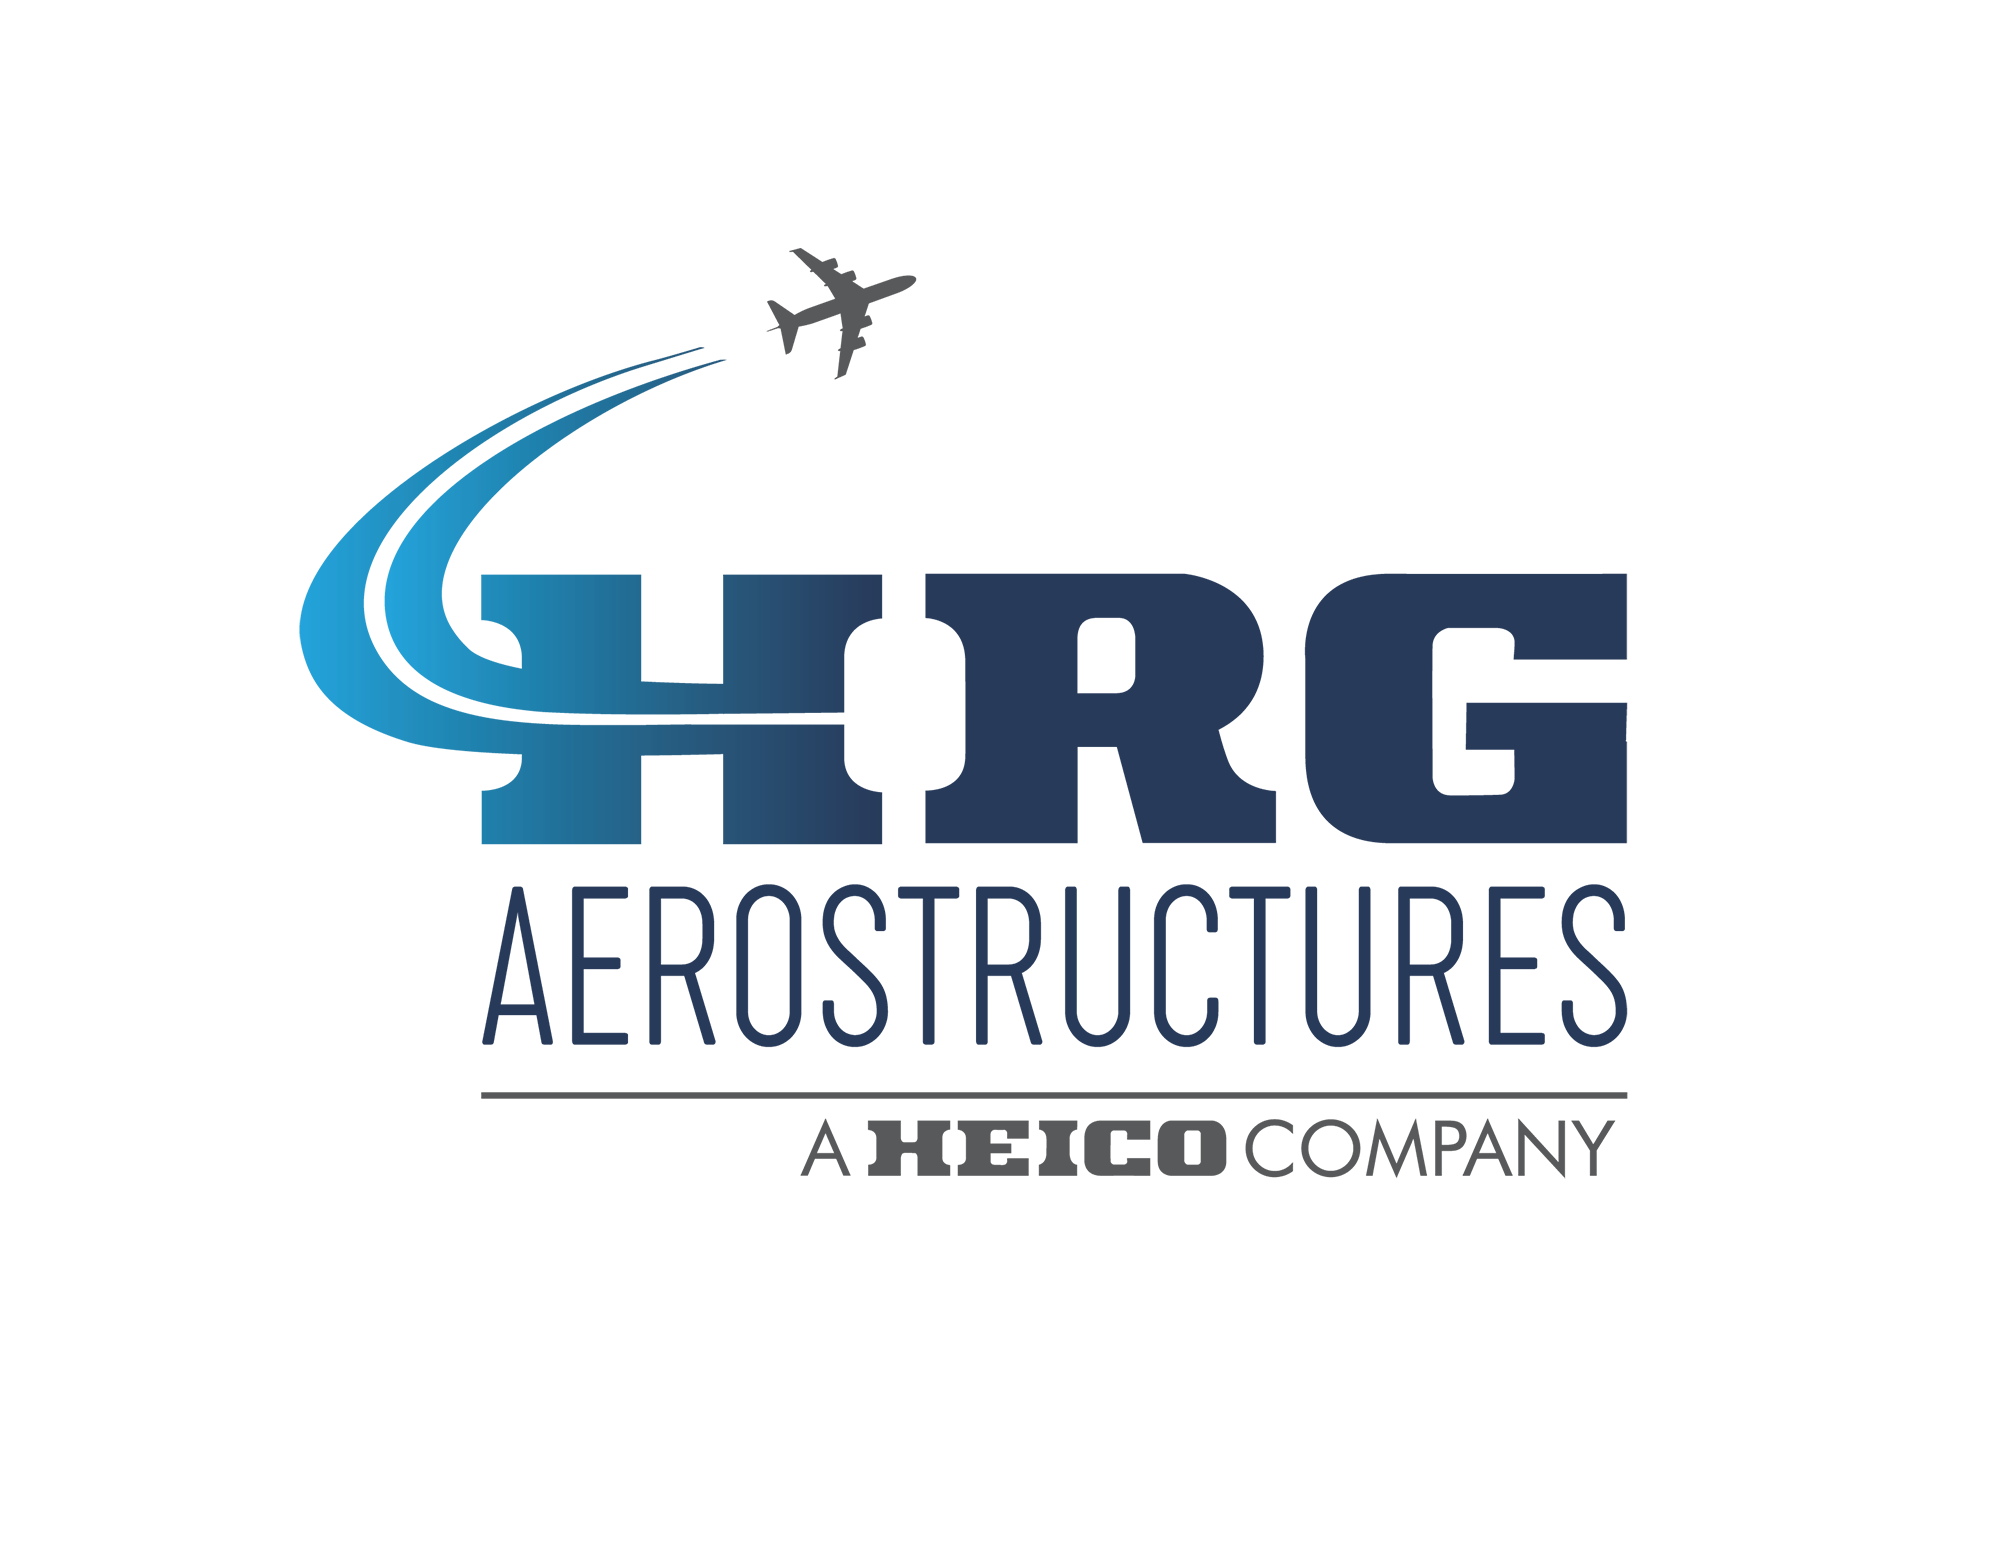 HEICO Repair Group Aerostructures